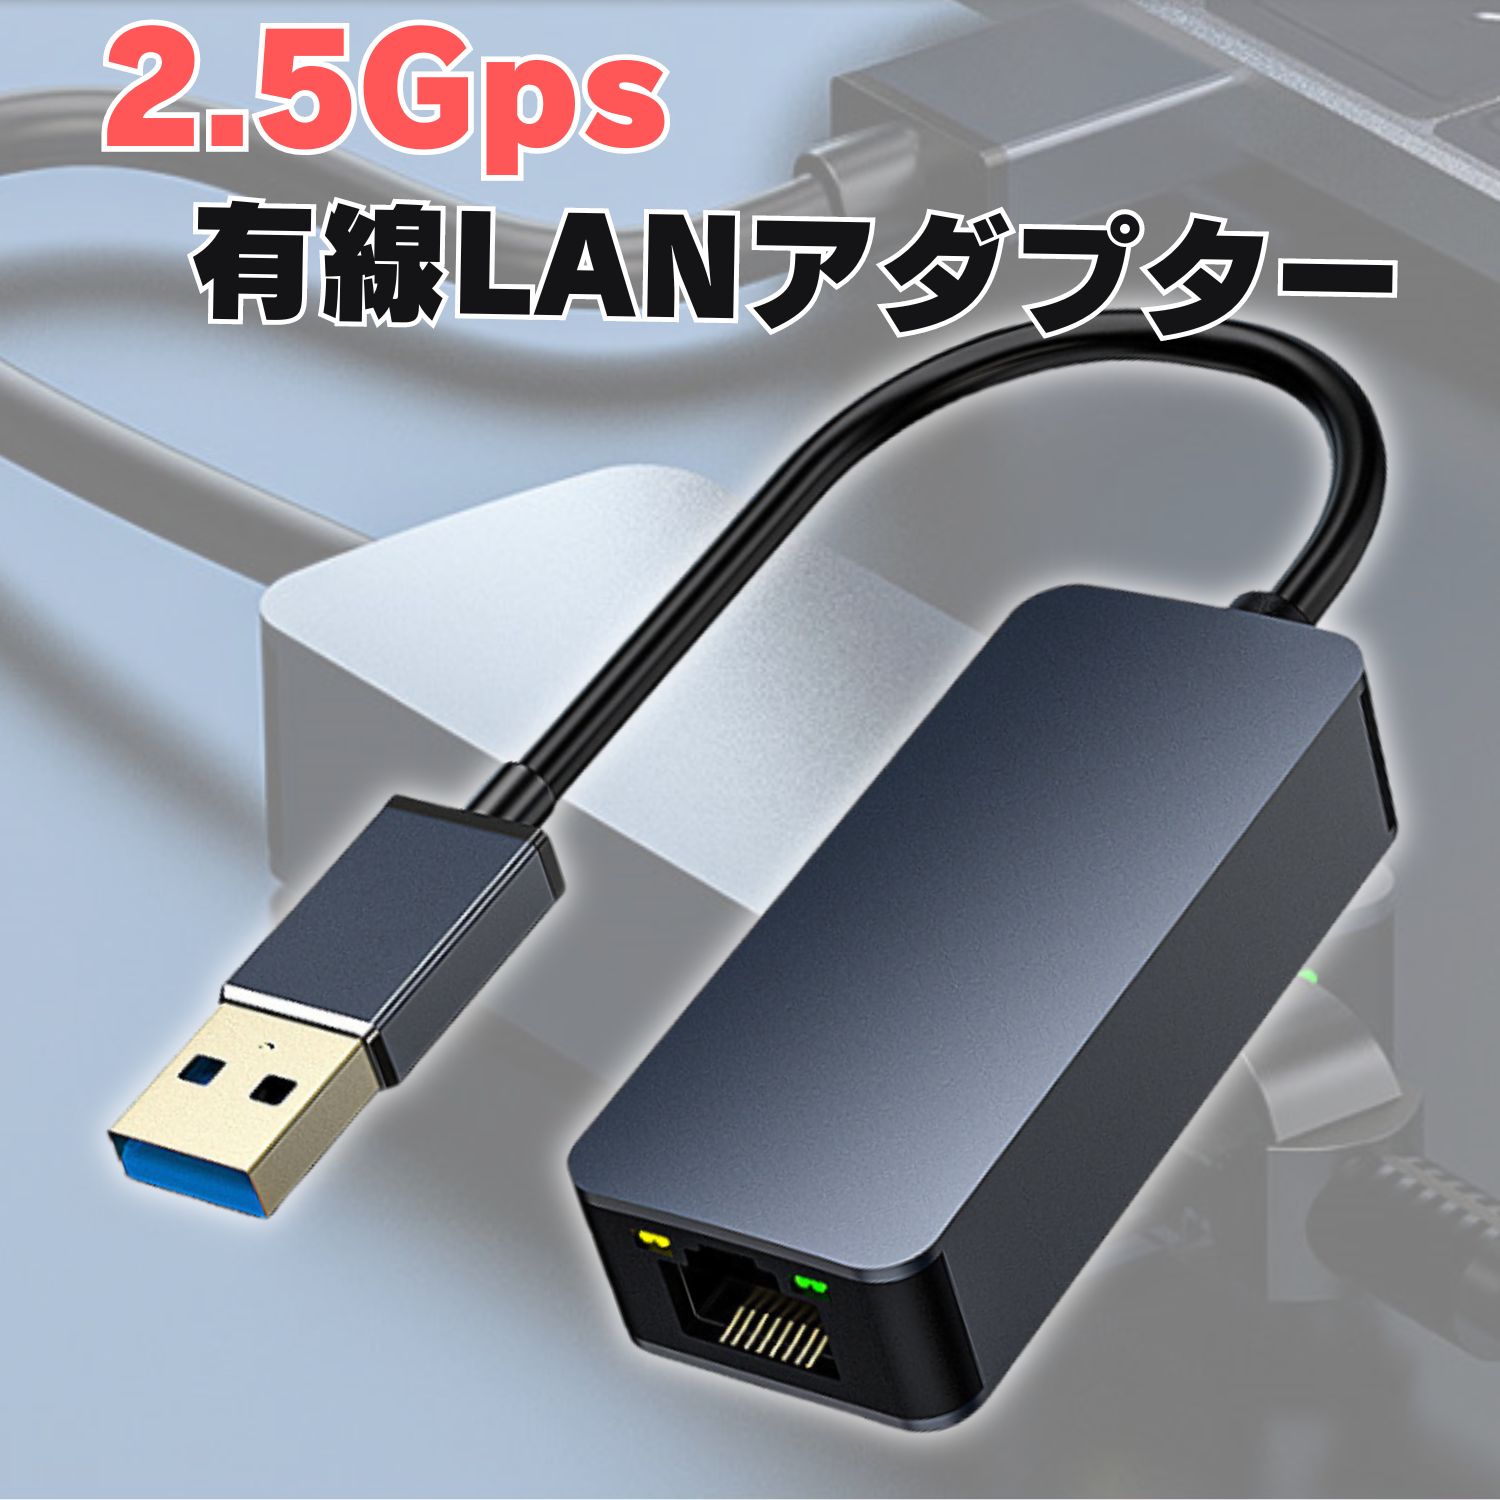 2.5G 有線LANアダプター USB3.0 ギガビット 2500Mbps 変換アダプタ RJ45 LANアダプタ イーサネット Eth..